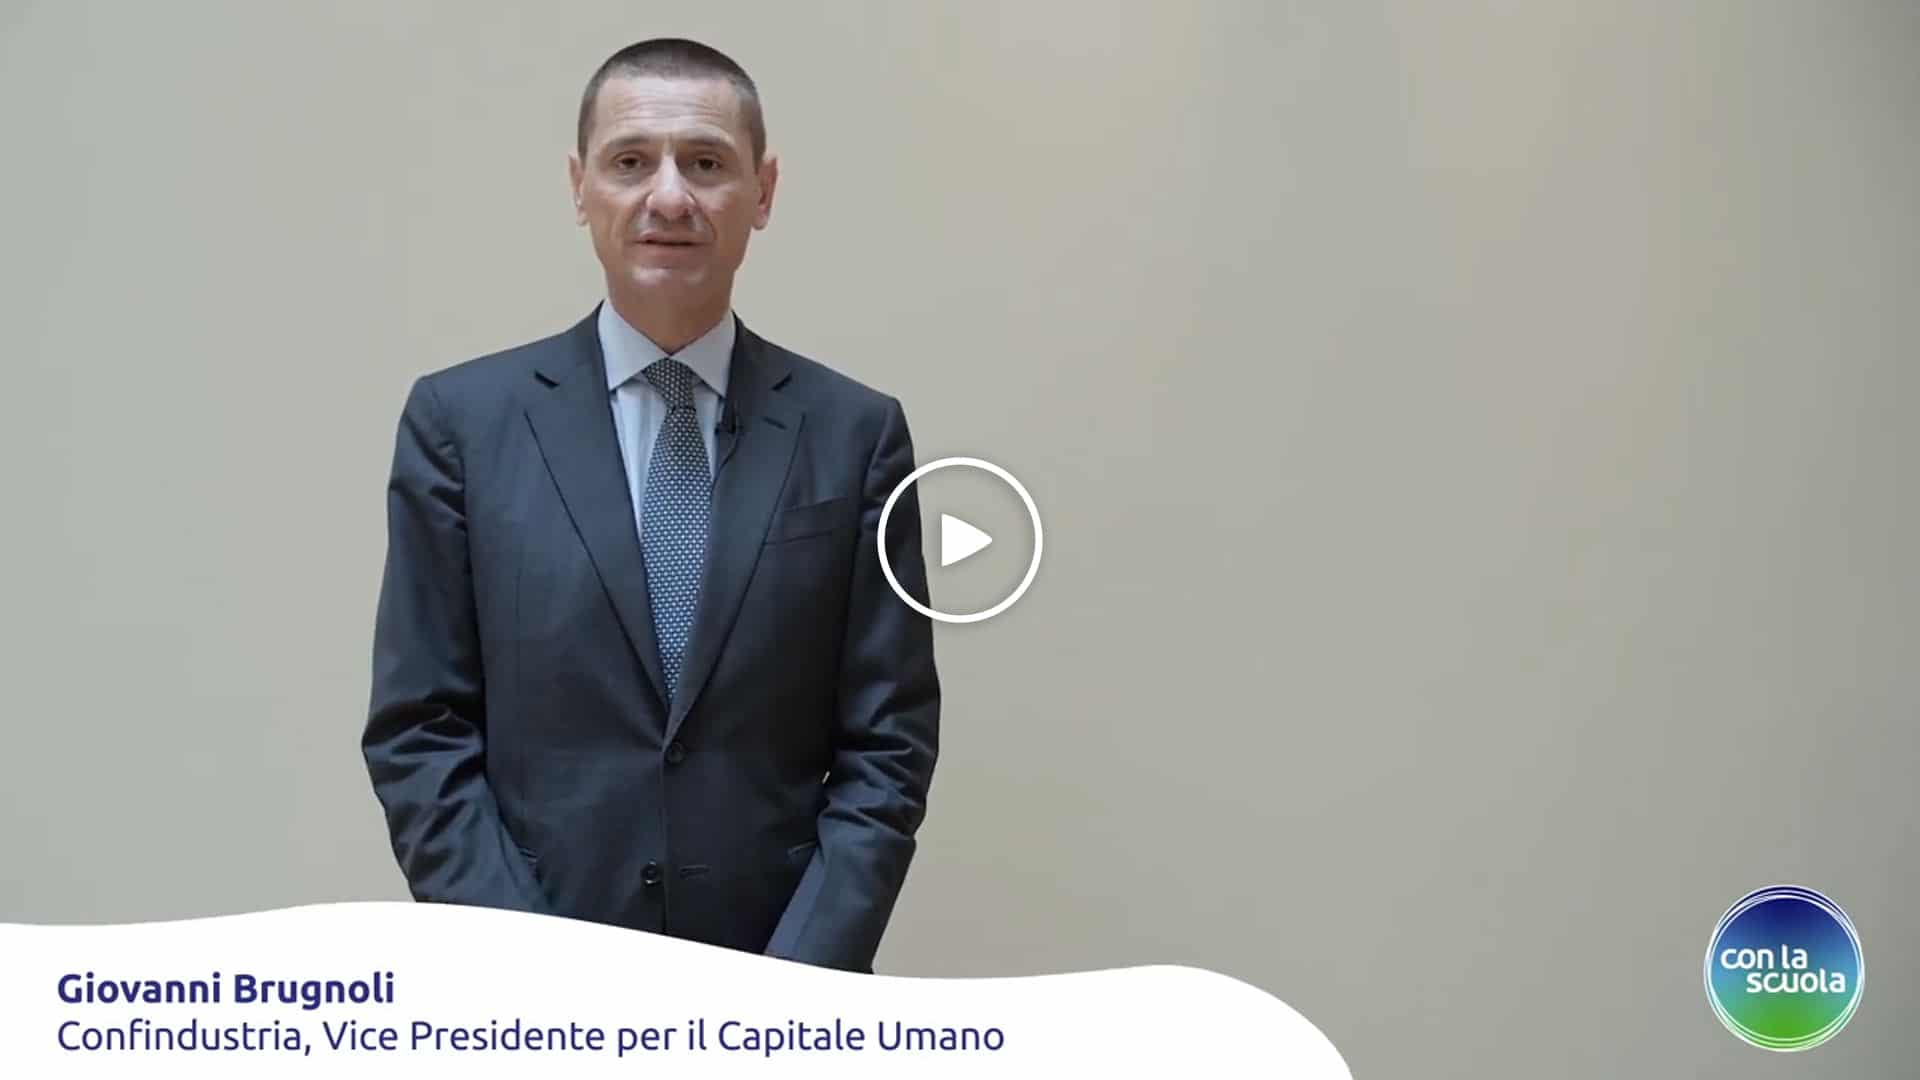 Testimonianze Con la Scuola - Giovanni Brugnoli, VP per il Capitale Umano Confindustria